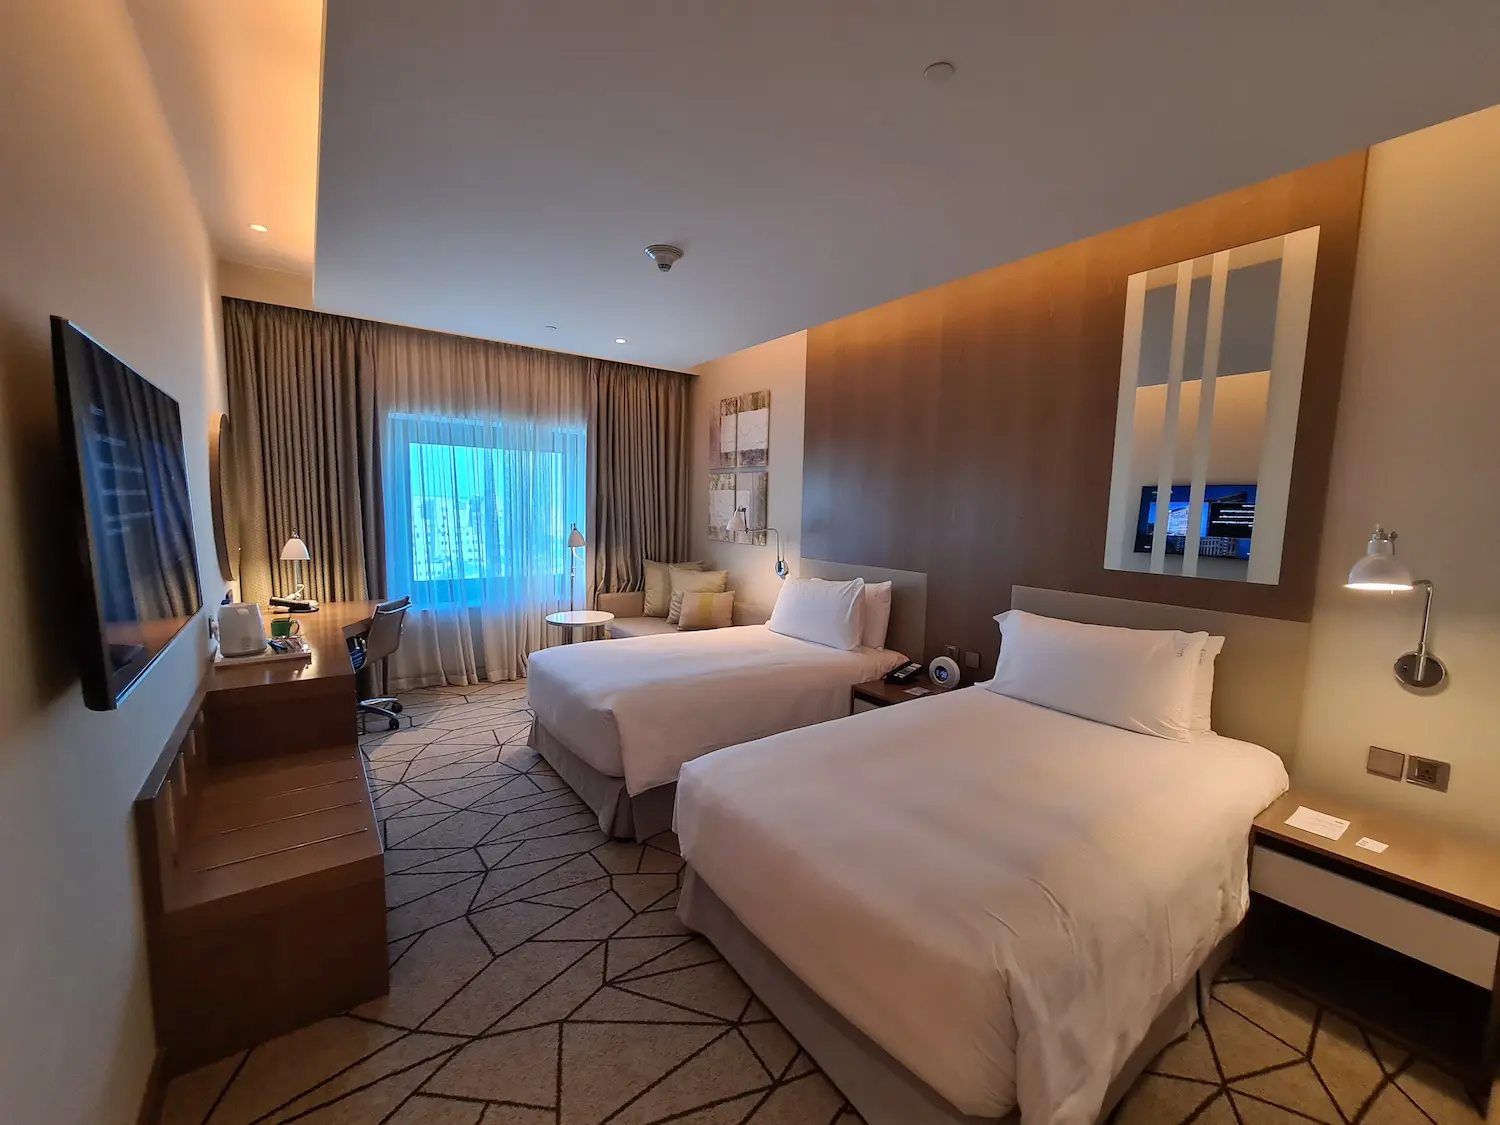 Dubai Festival City Hotel Review